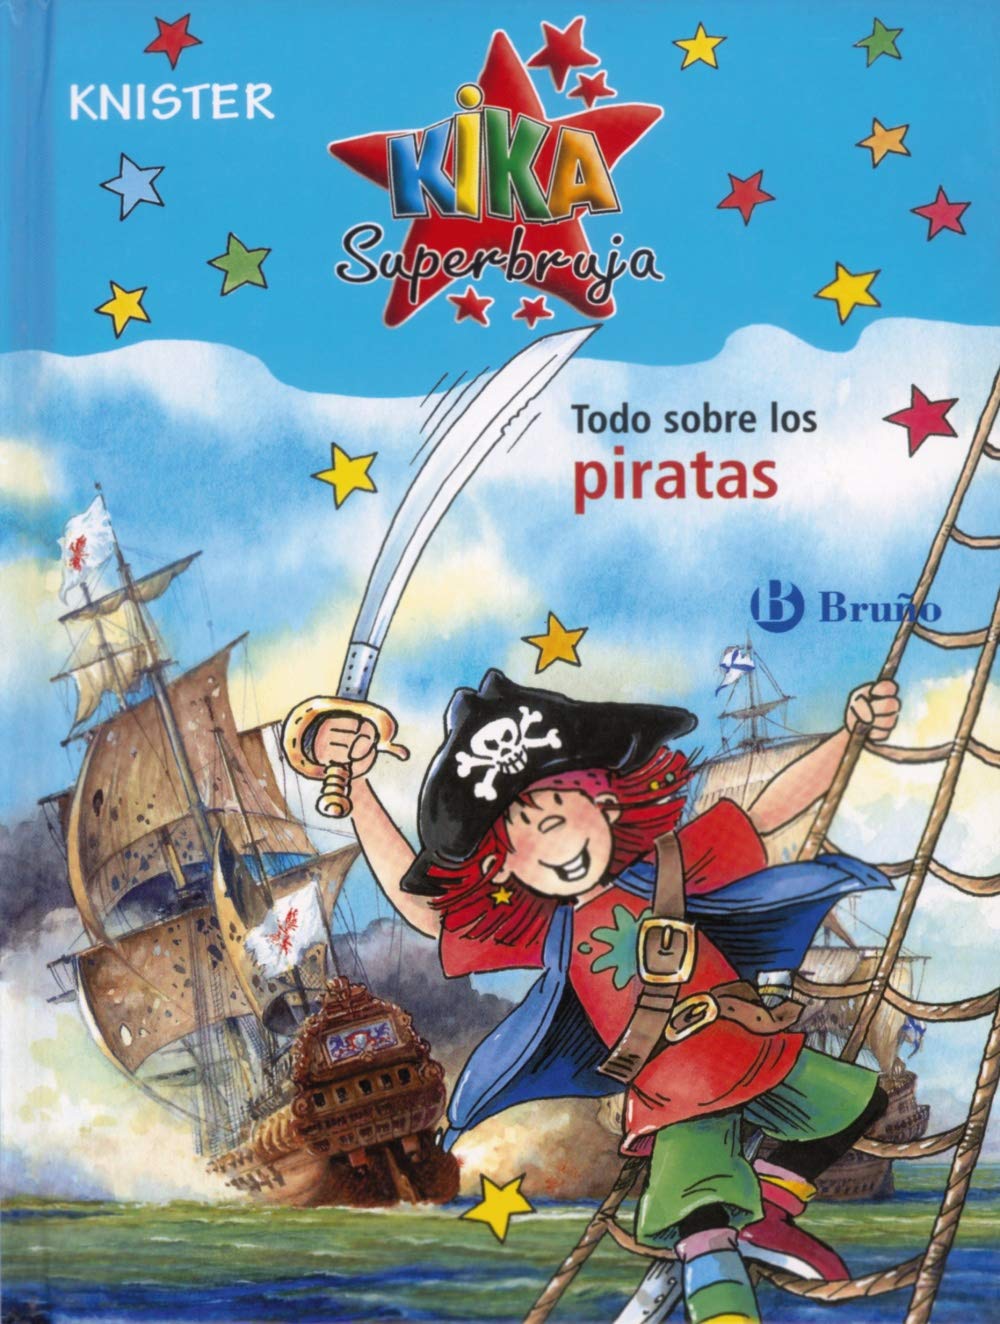 Libro: Todo sobre los piratas por Knister